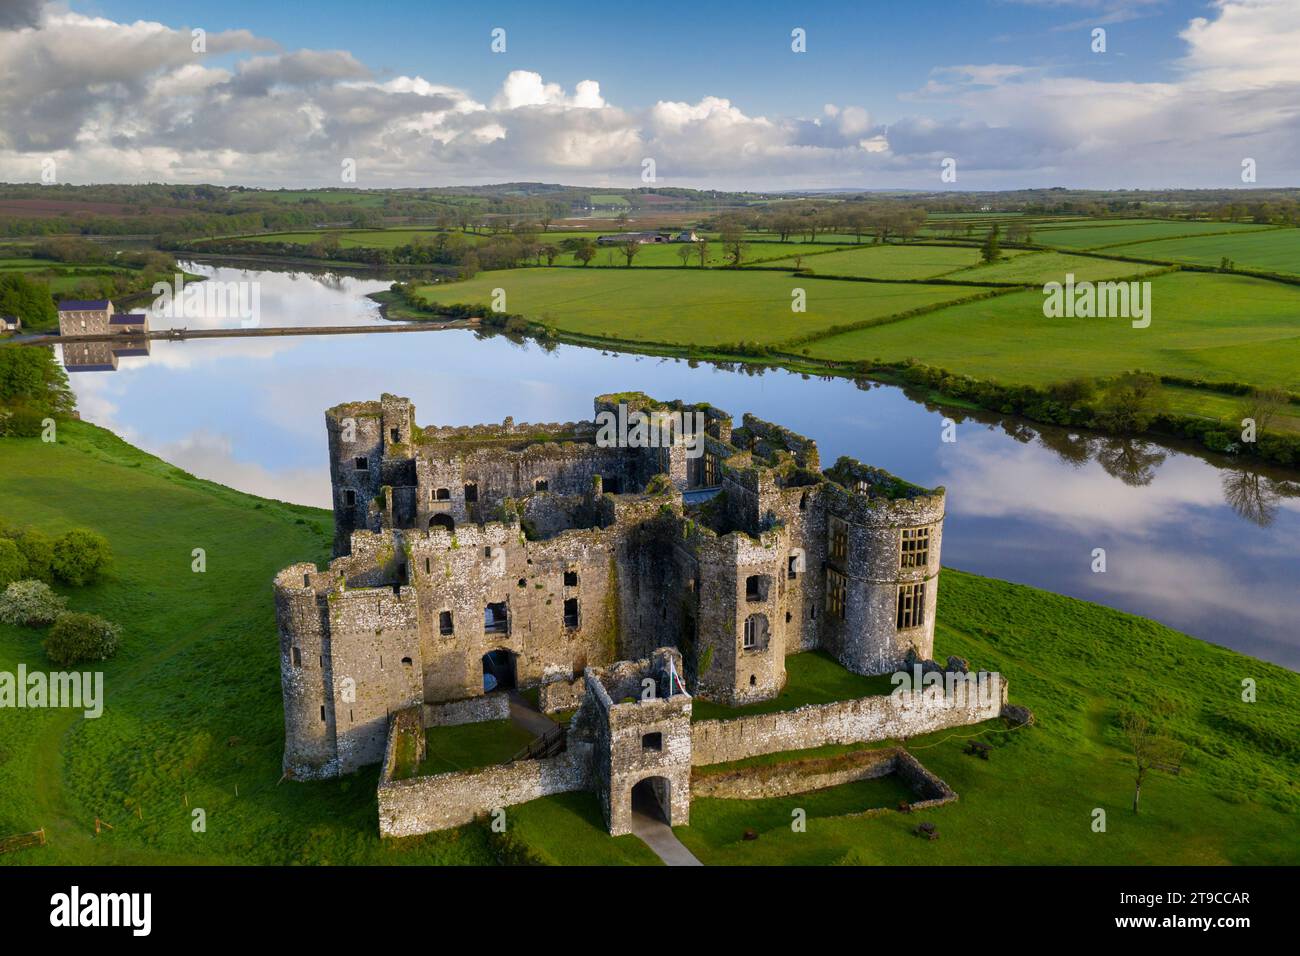 vue aérienne du château de Carew dans le parc national de la côte du Pembrokeshire, pays de Galles, Royaume-Uni. Printemps (mai) 2021. Banque D'Images